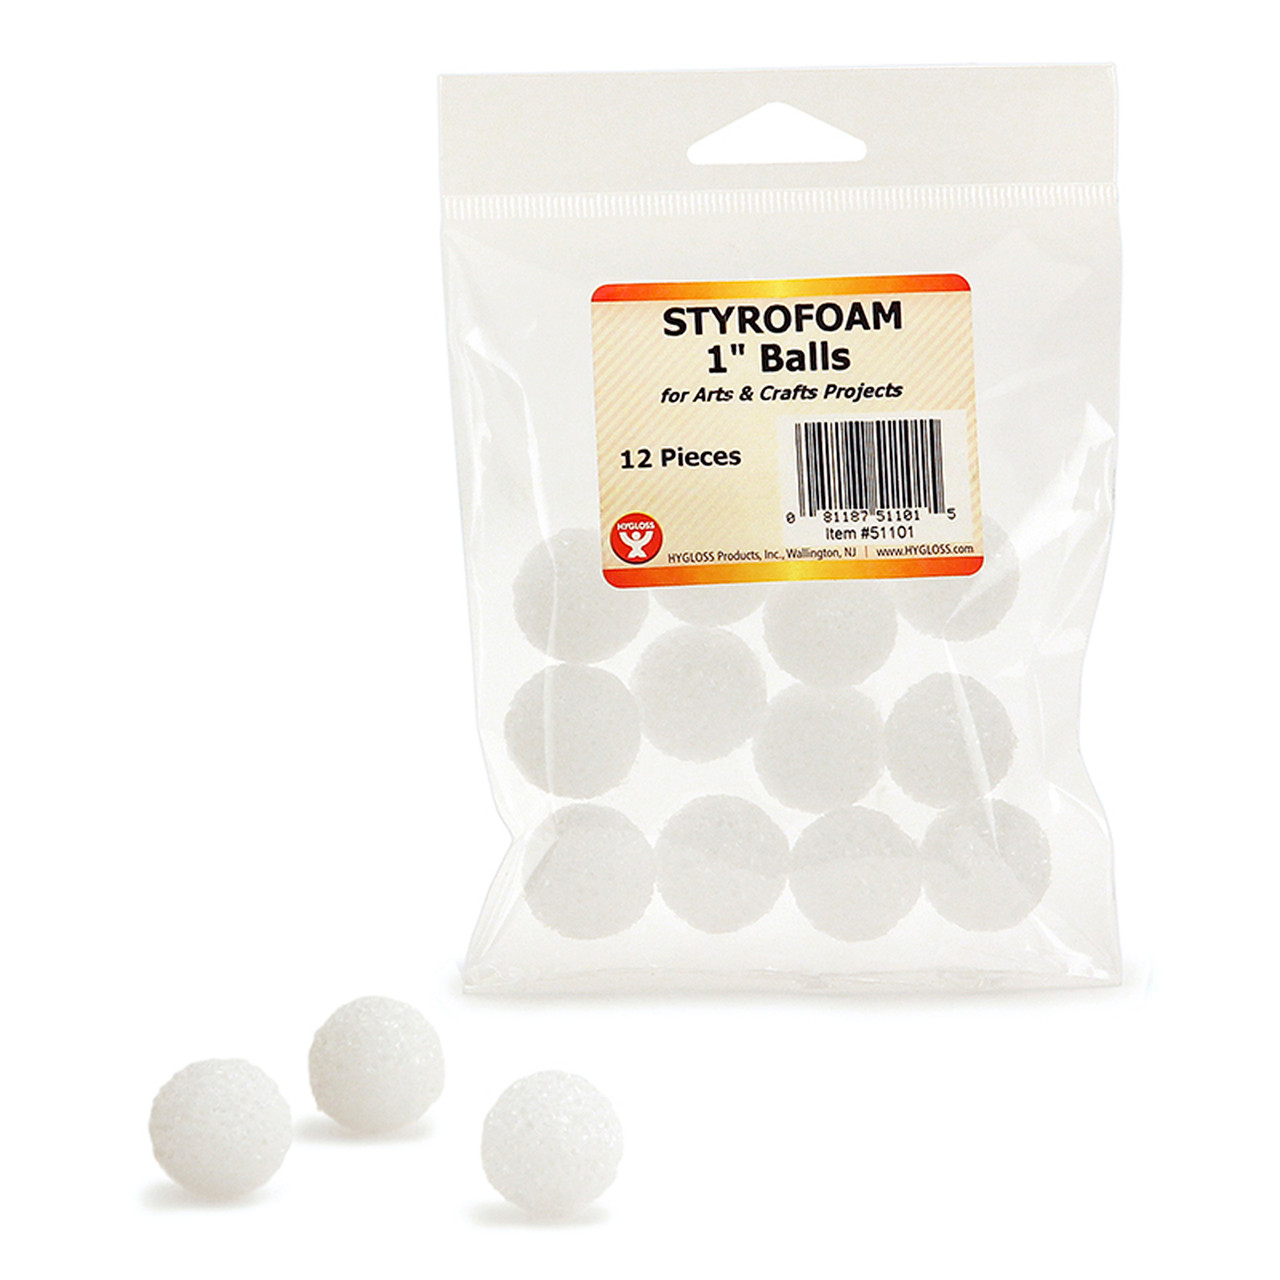 Styrofoam Balls, 1 Inch, White, 12 Per Pack, 6 Packs  HYG51101-6 23.94 New